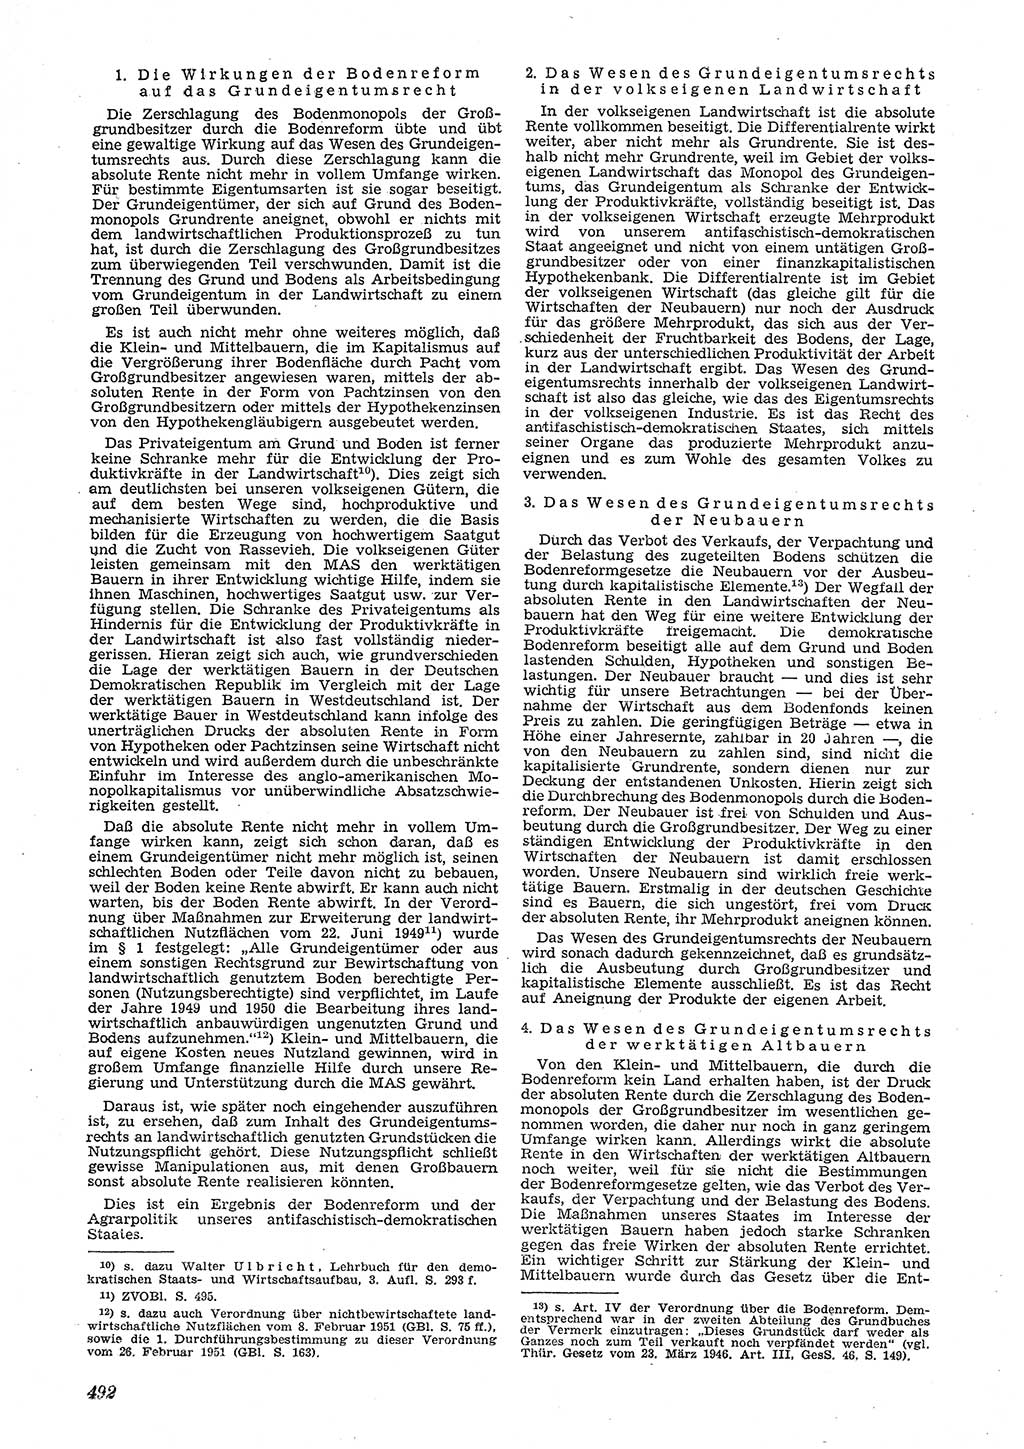 Neue Justiz (NJ), Zeitschrift für Recht und Rechtswissenschaft [Deutsche Demokratische Republik (DDR)], 5. Jahrgang 1951, Seite 492 (NJ DDR 1951, S. 492)